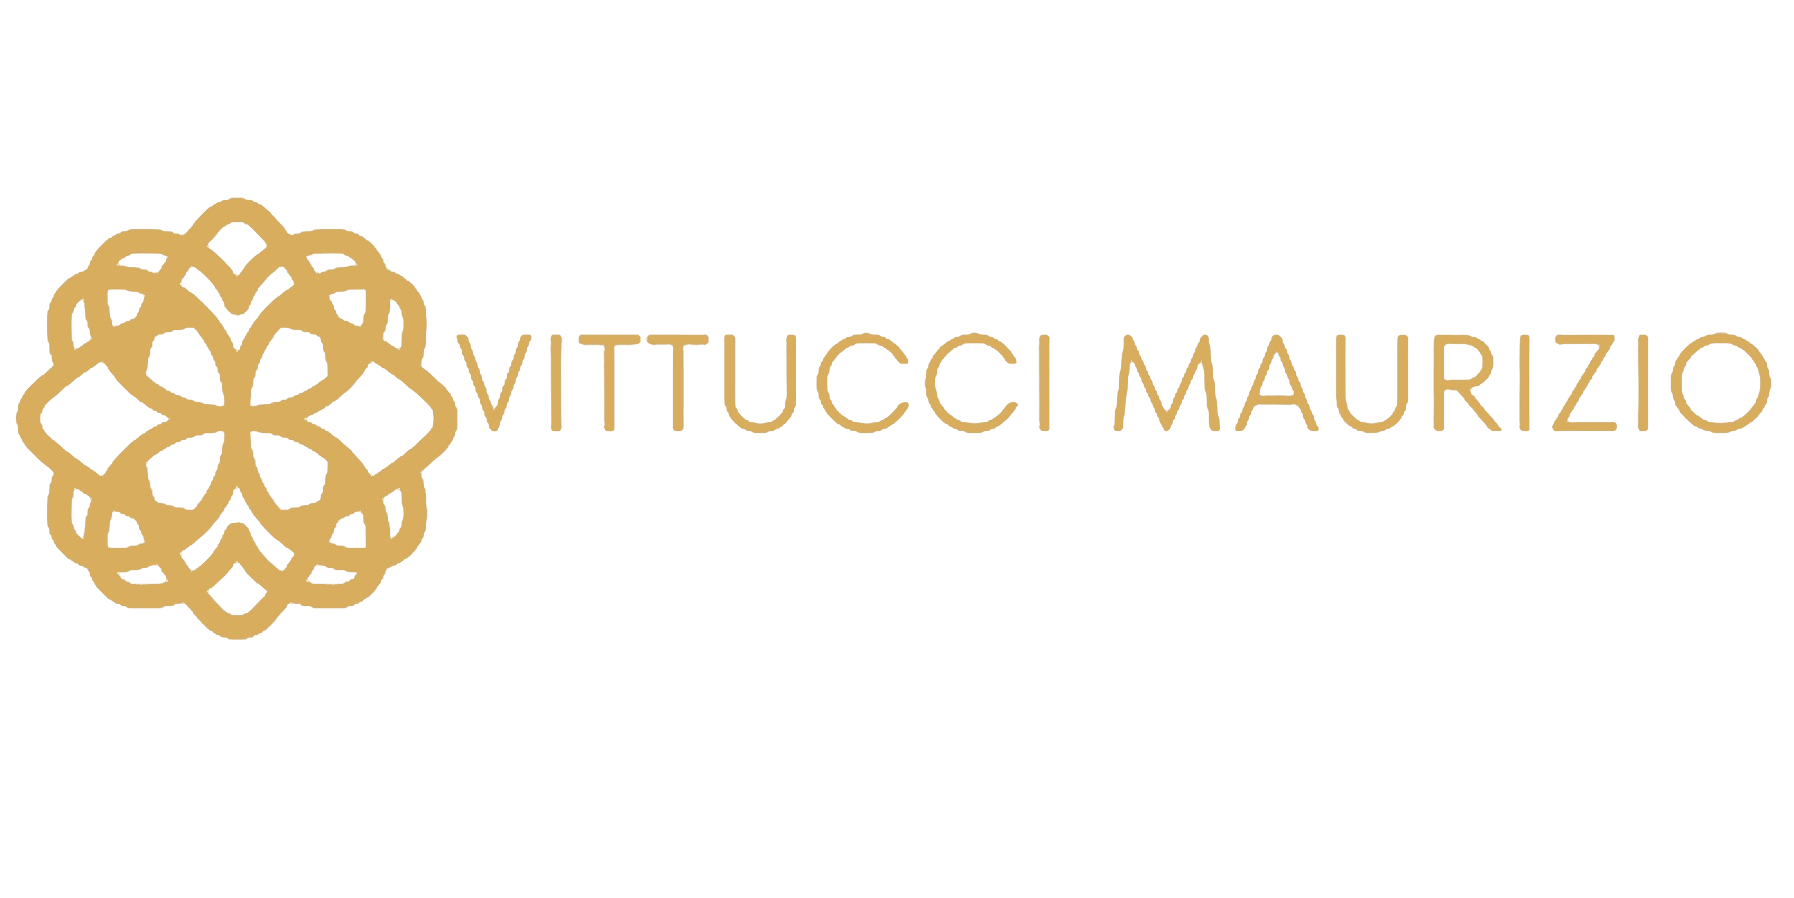 Studio Vittucci Maurizio - Commercialista, Studio consulenza fiscale e contabilità